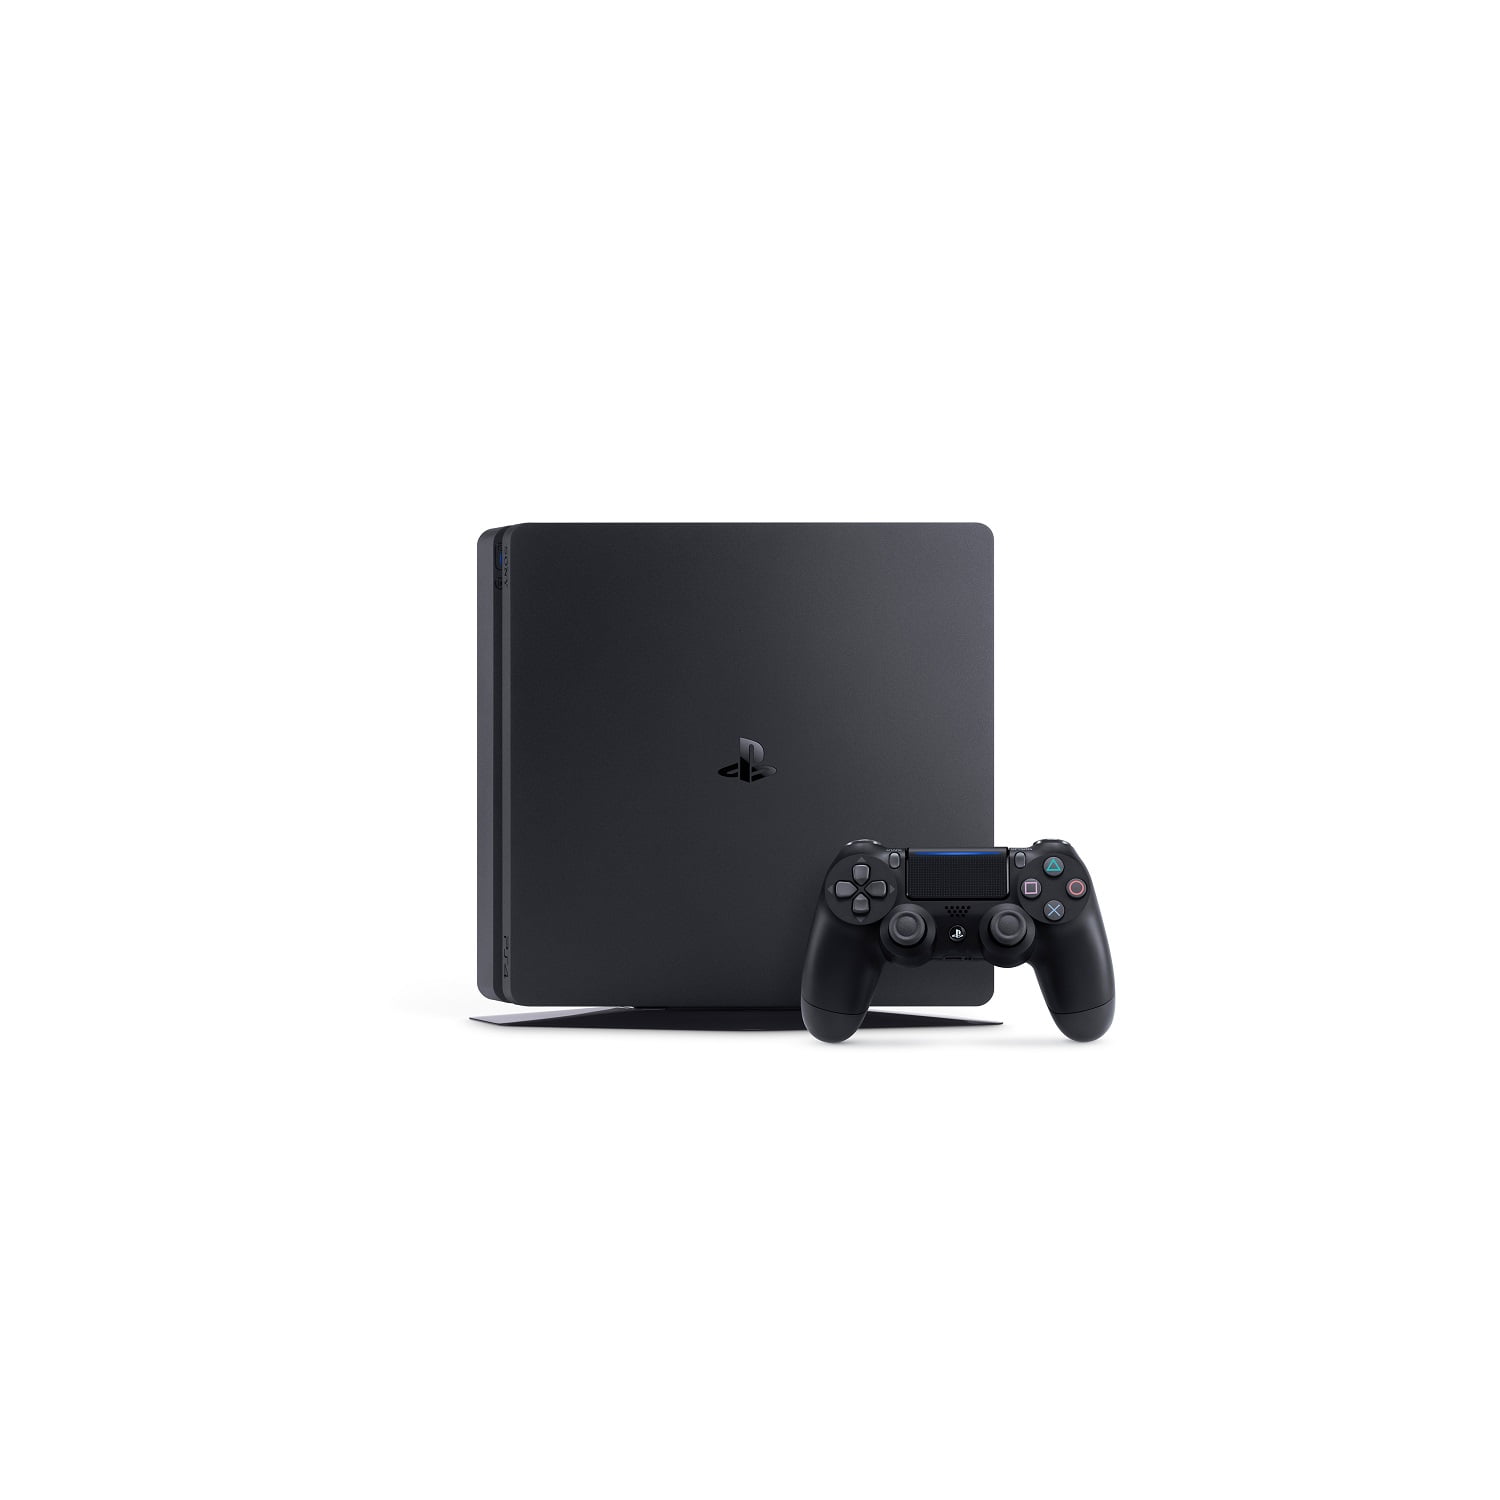 Sony PlayStation 4 Slim 500GB Gaming Console, Black, CUH-2115A 